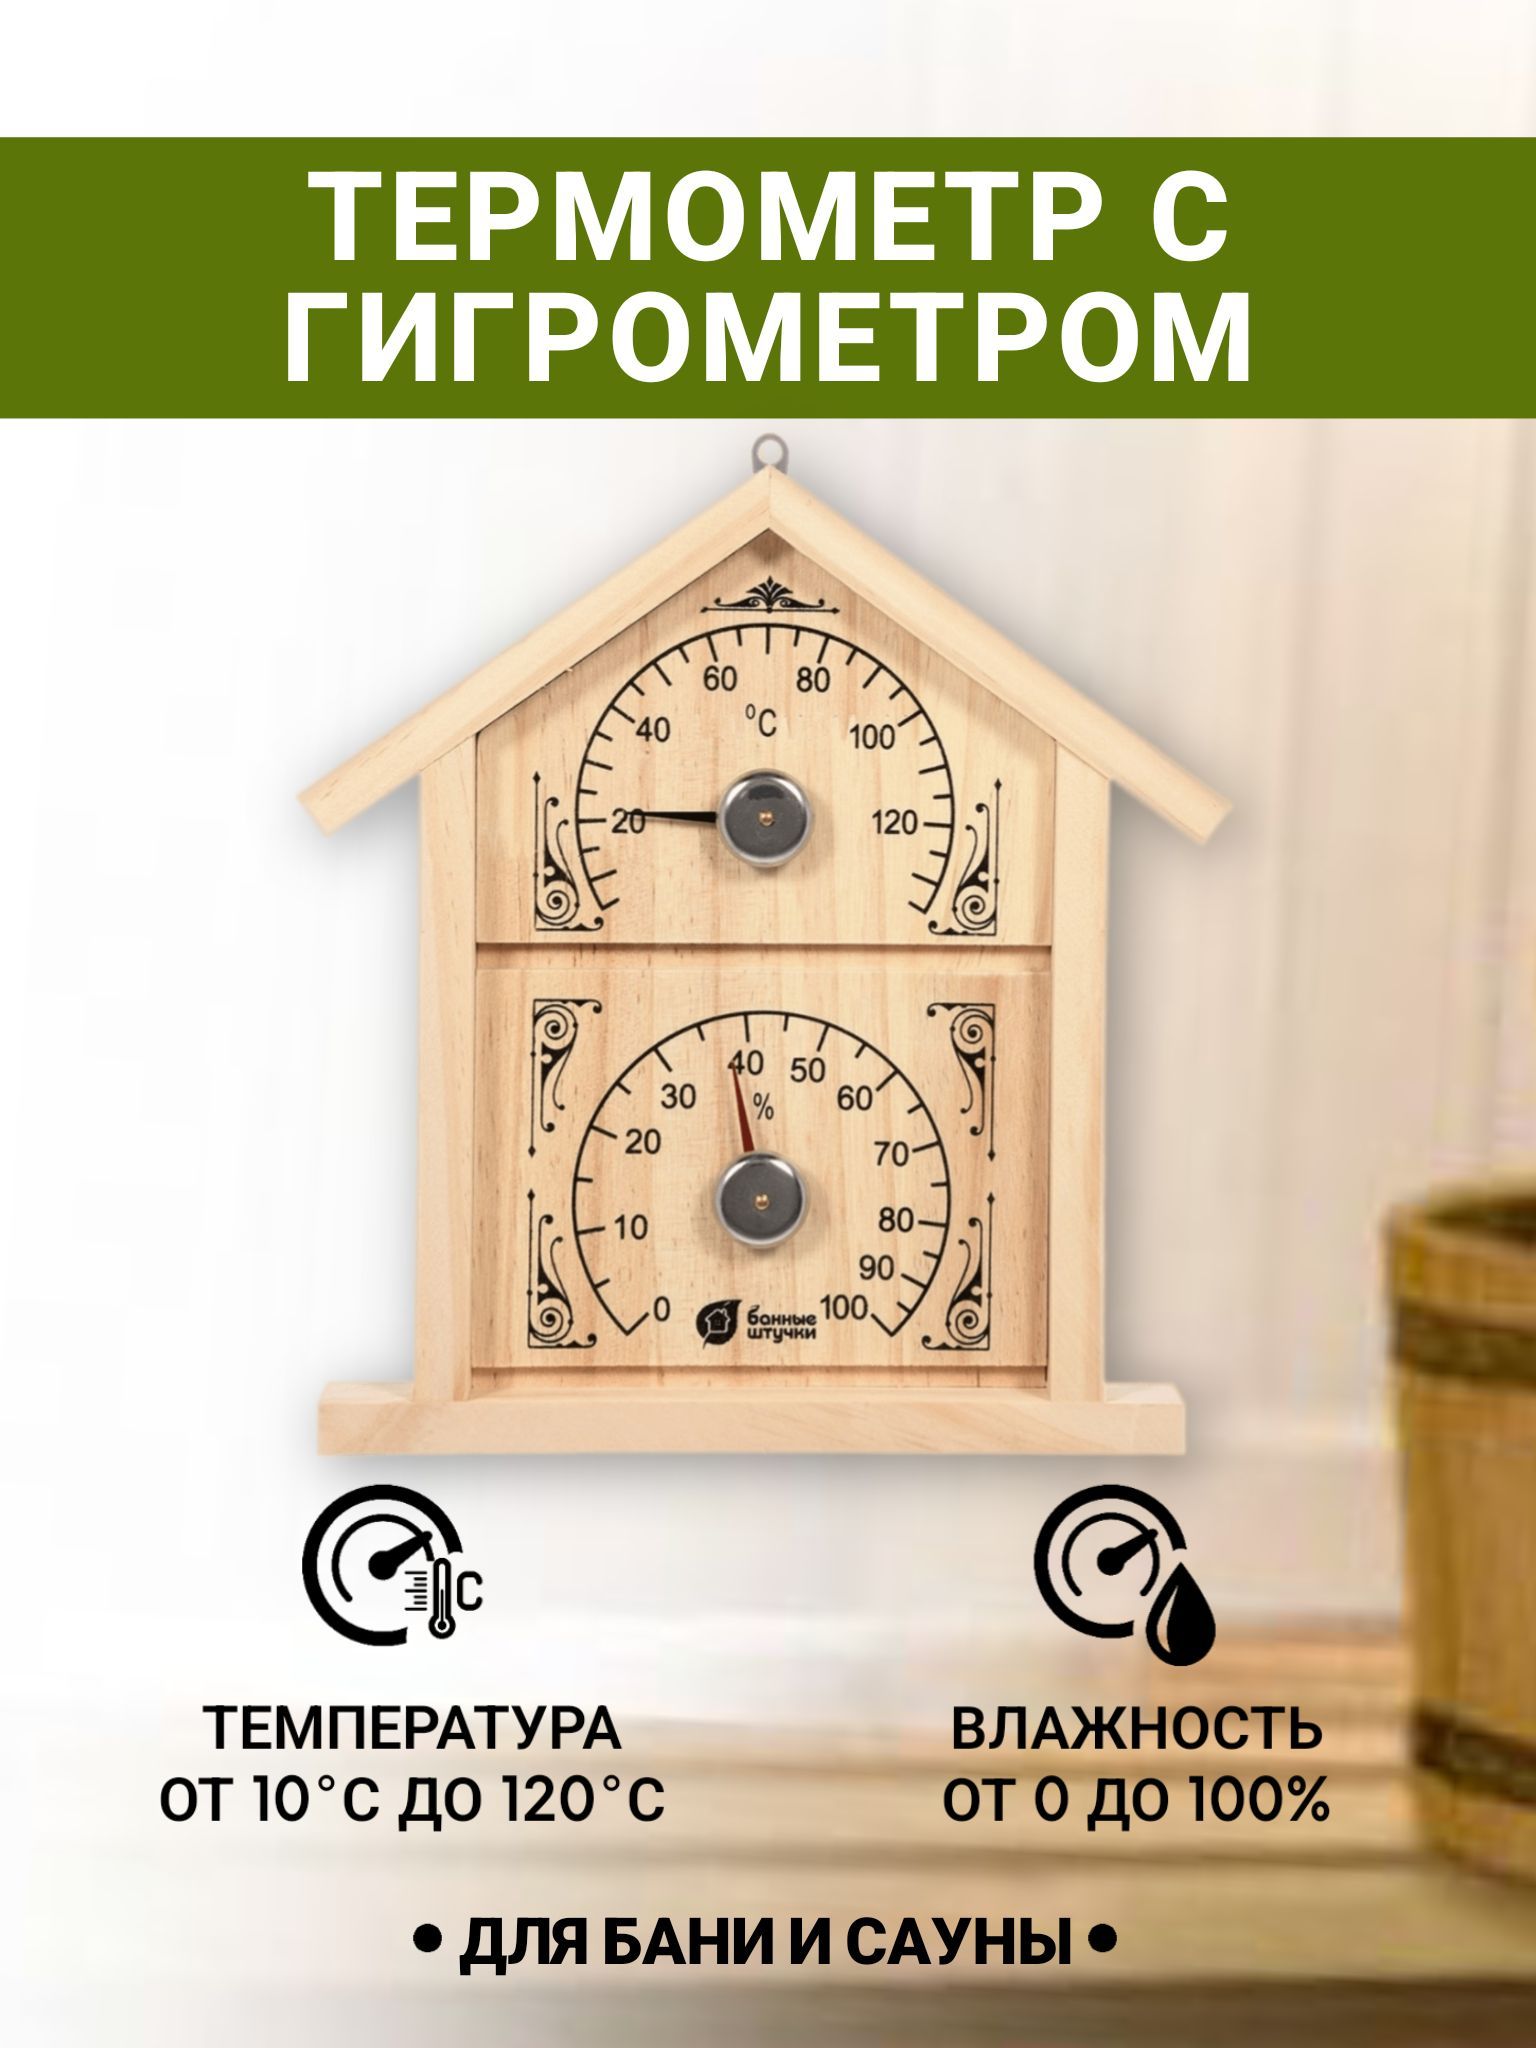 ТермометрсгигрометромБаннаястанция"Домик",23,6х22х2,5см,длябаниисауны